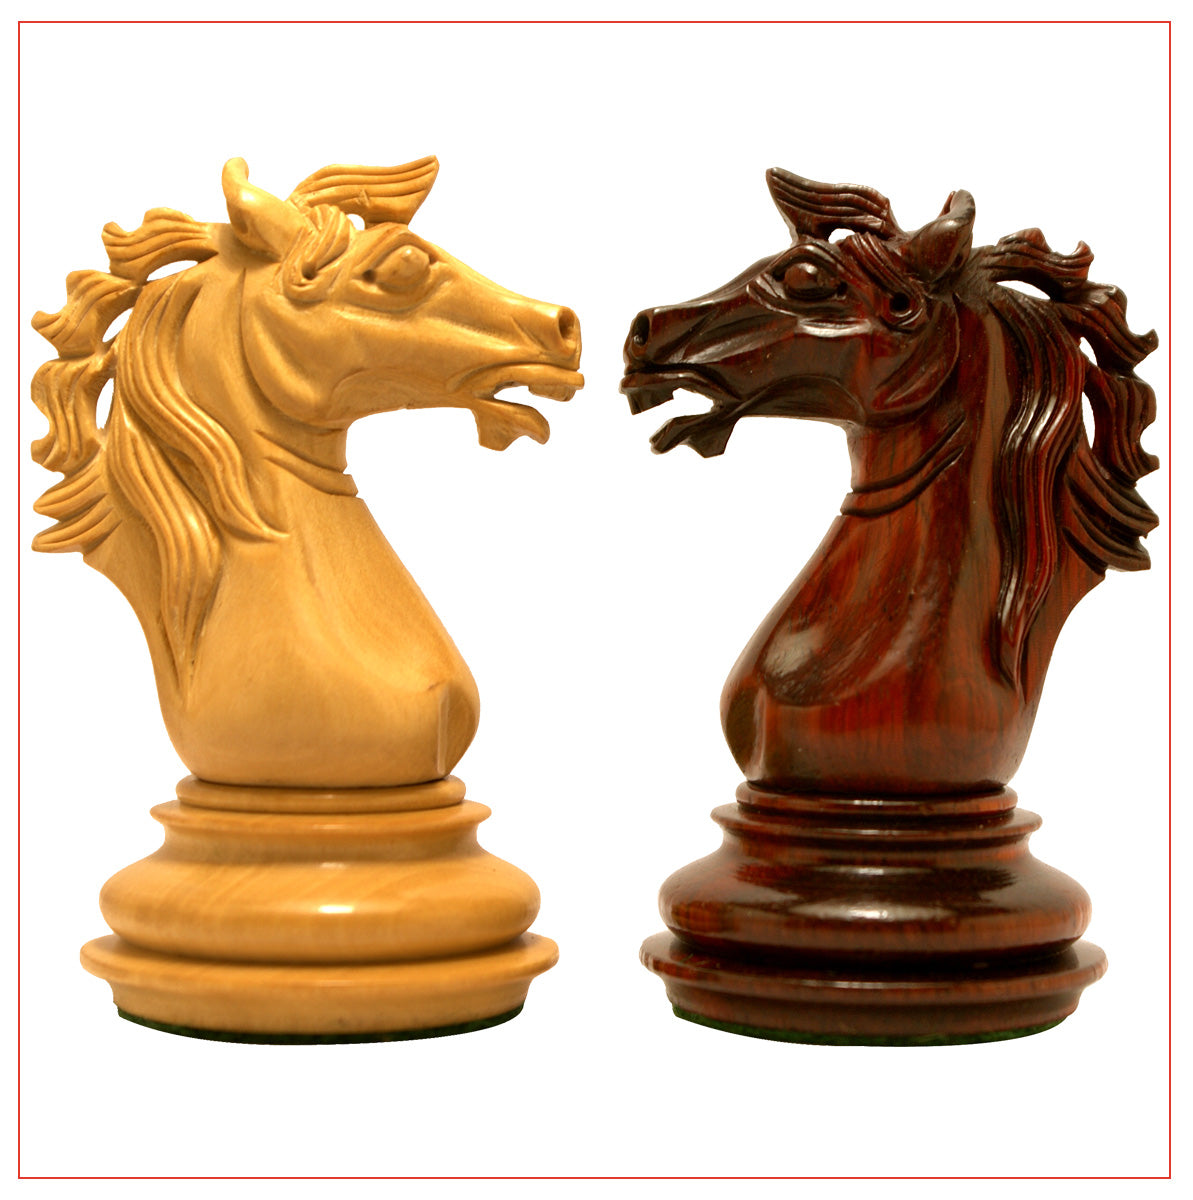 Regal Series 4" Padouk Wood Chess Pieces